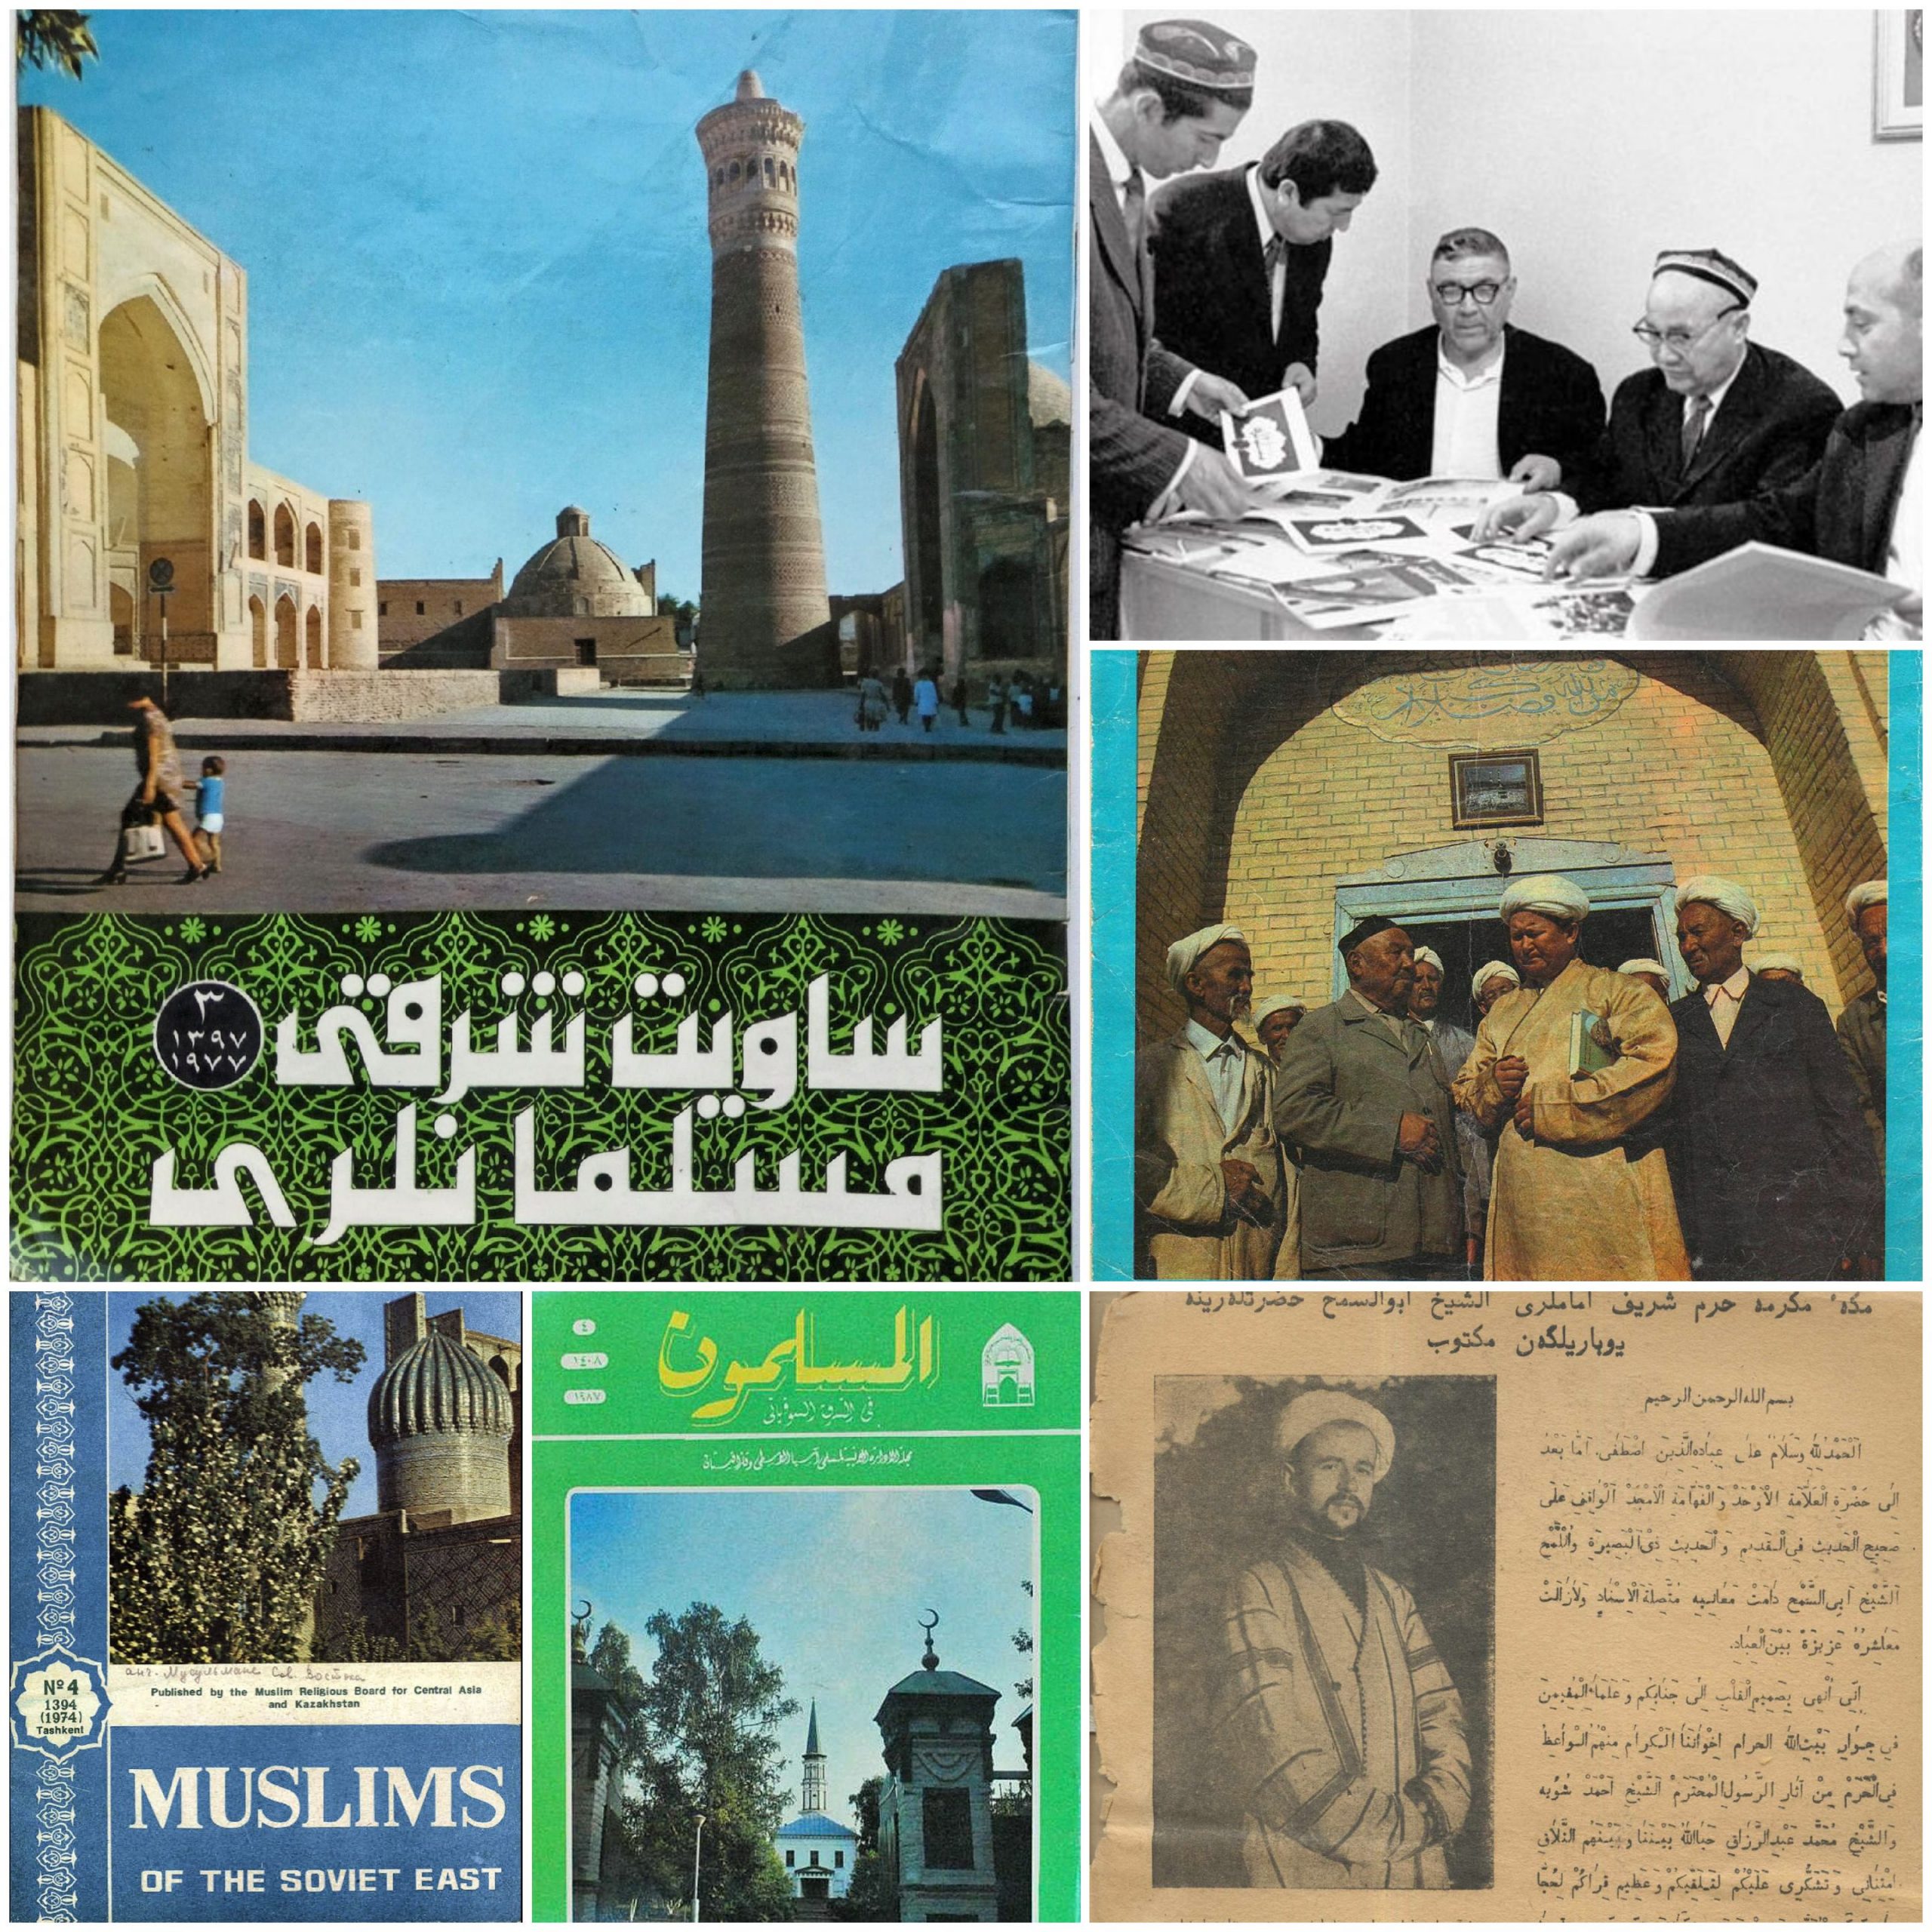 عدّت المجلة الإسلامية "المسلمون في الشرق السوفيتي" الوحيدة في الإتحاد السوفيتي